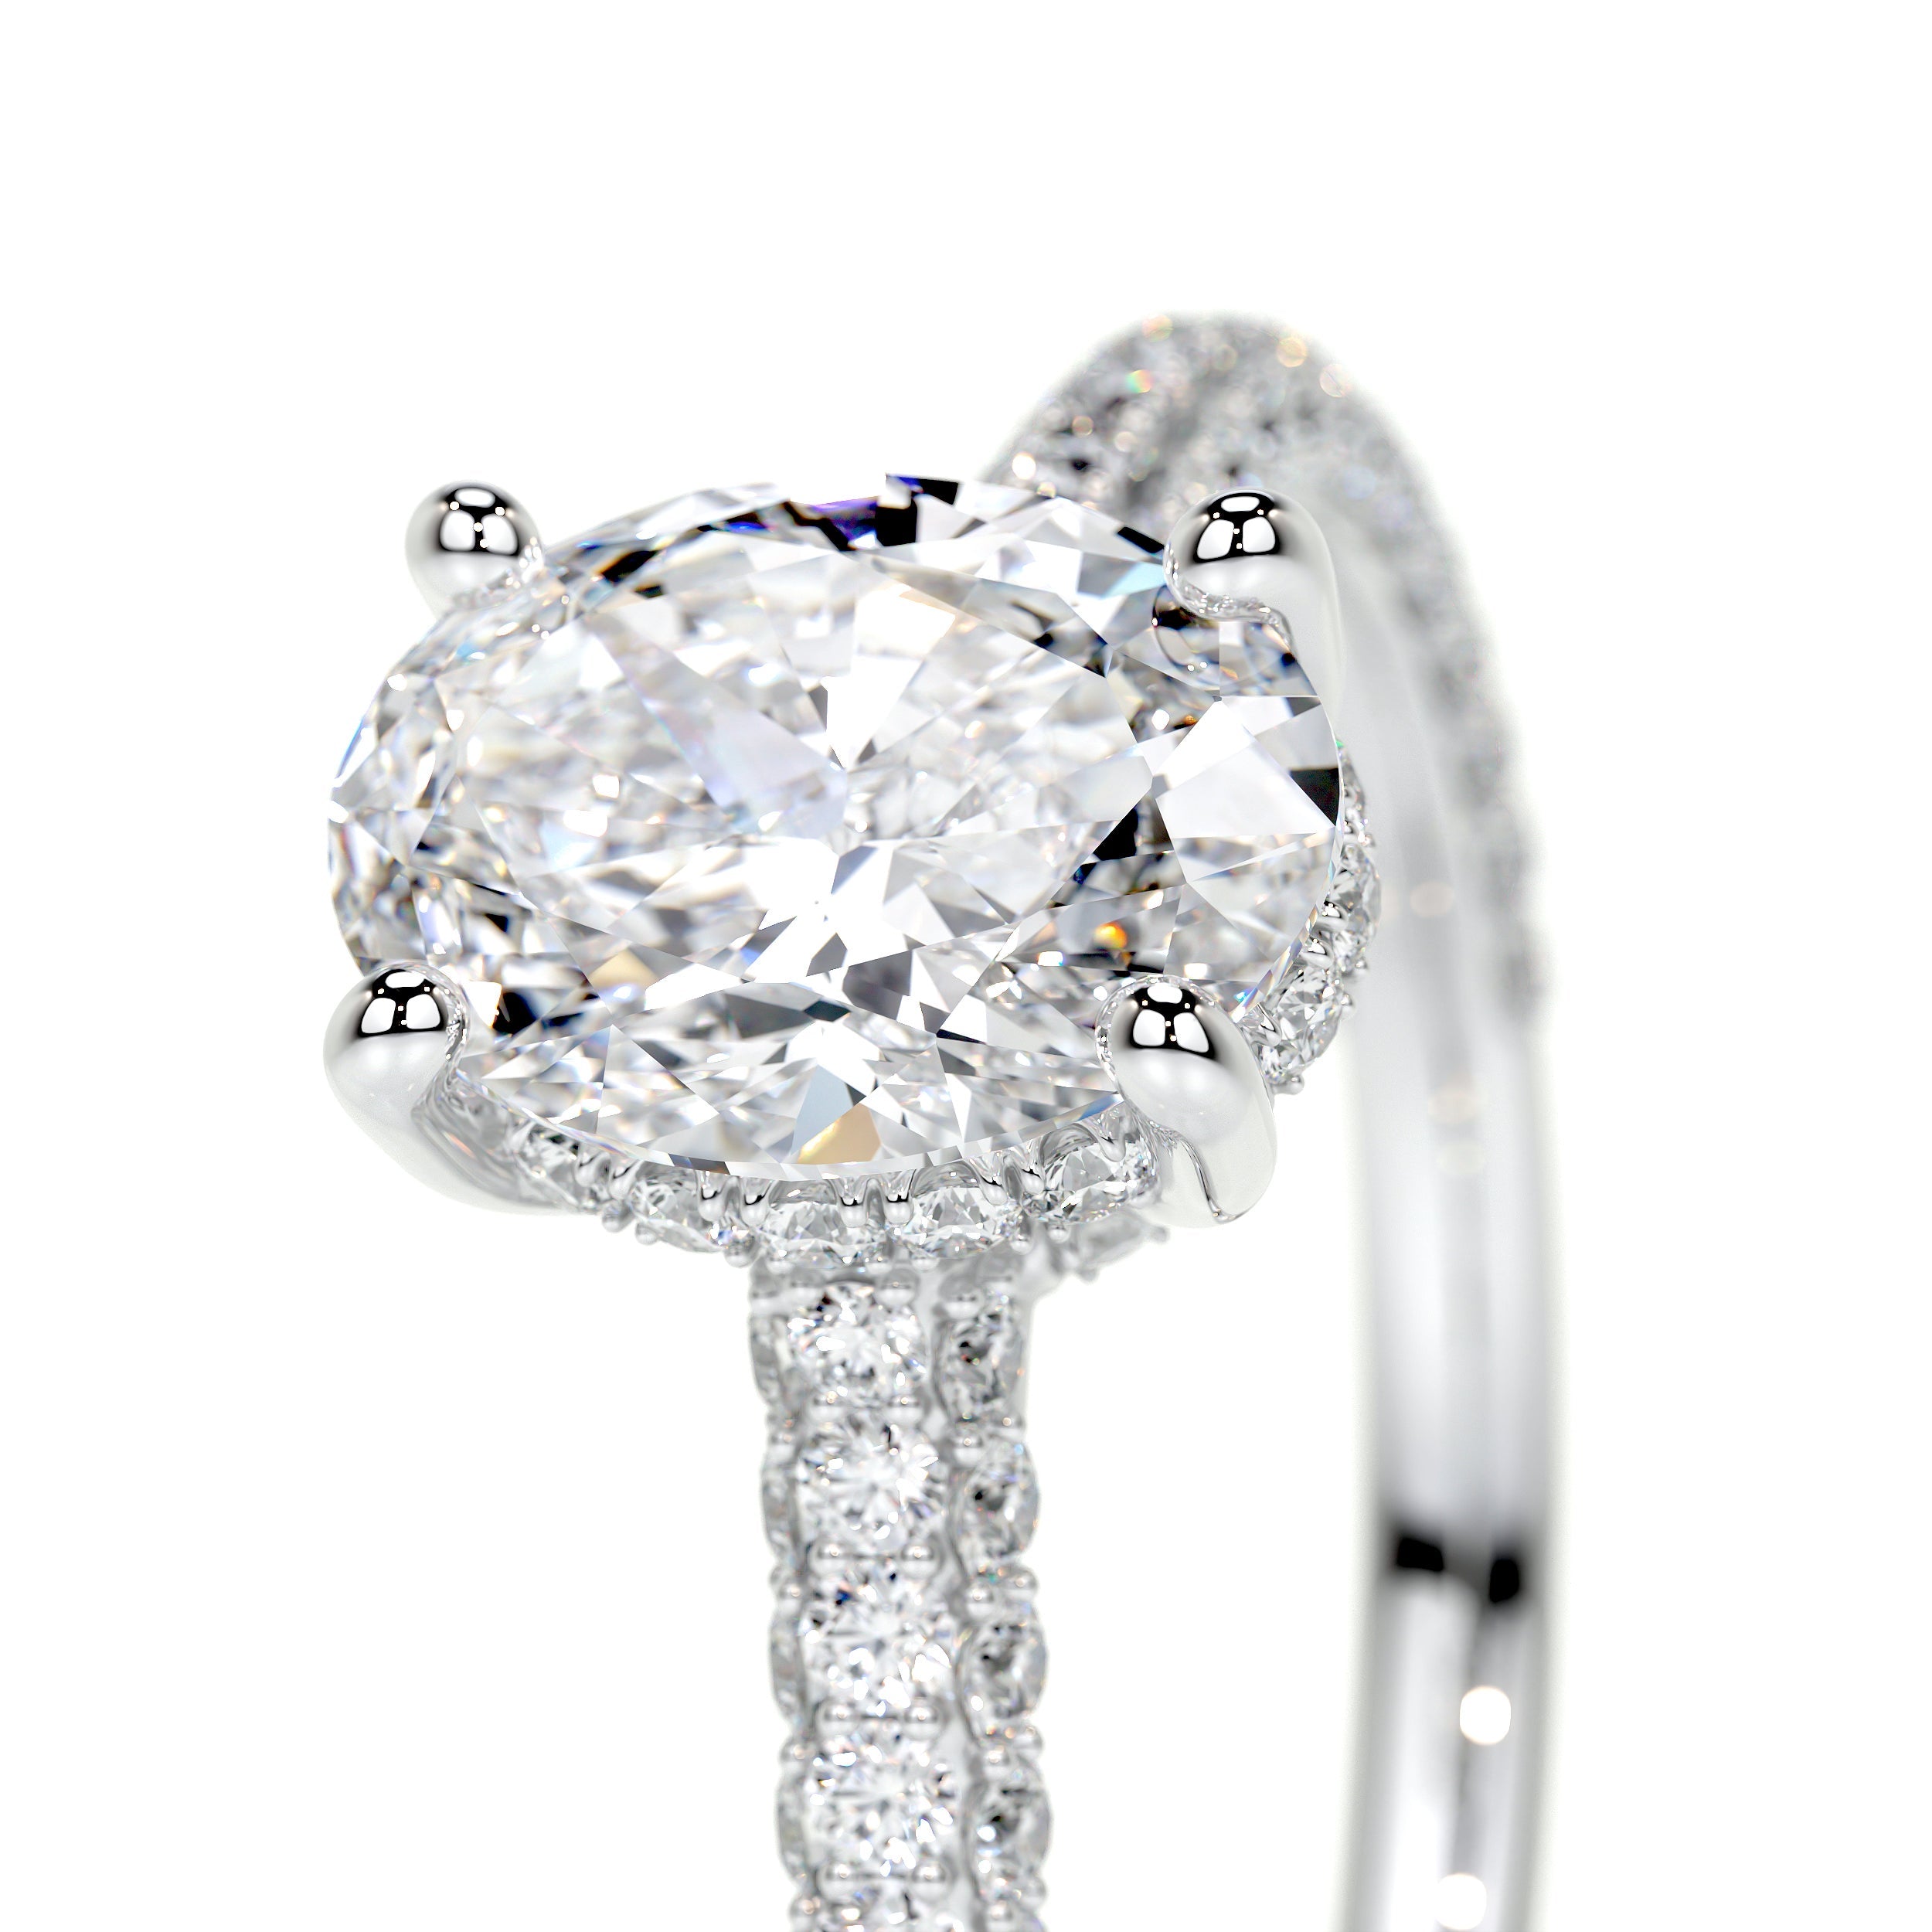 Rebecca Lab Grown Diamond Ring   (2.5 Carat) -14K White Gold